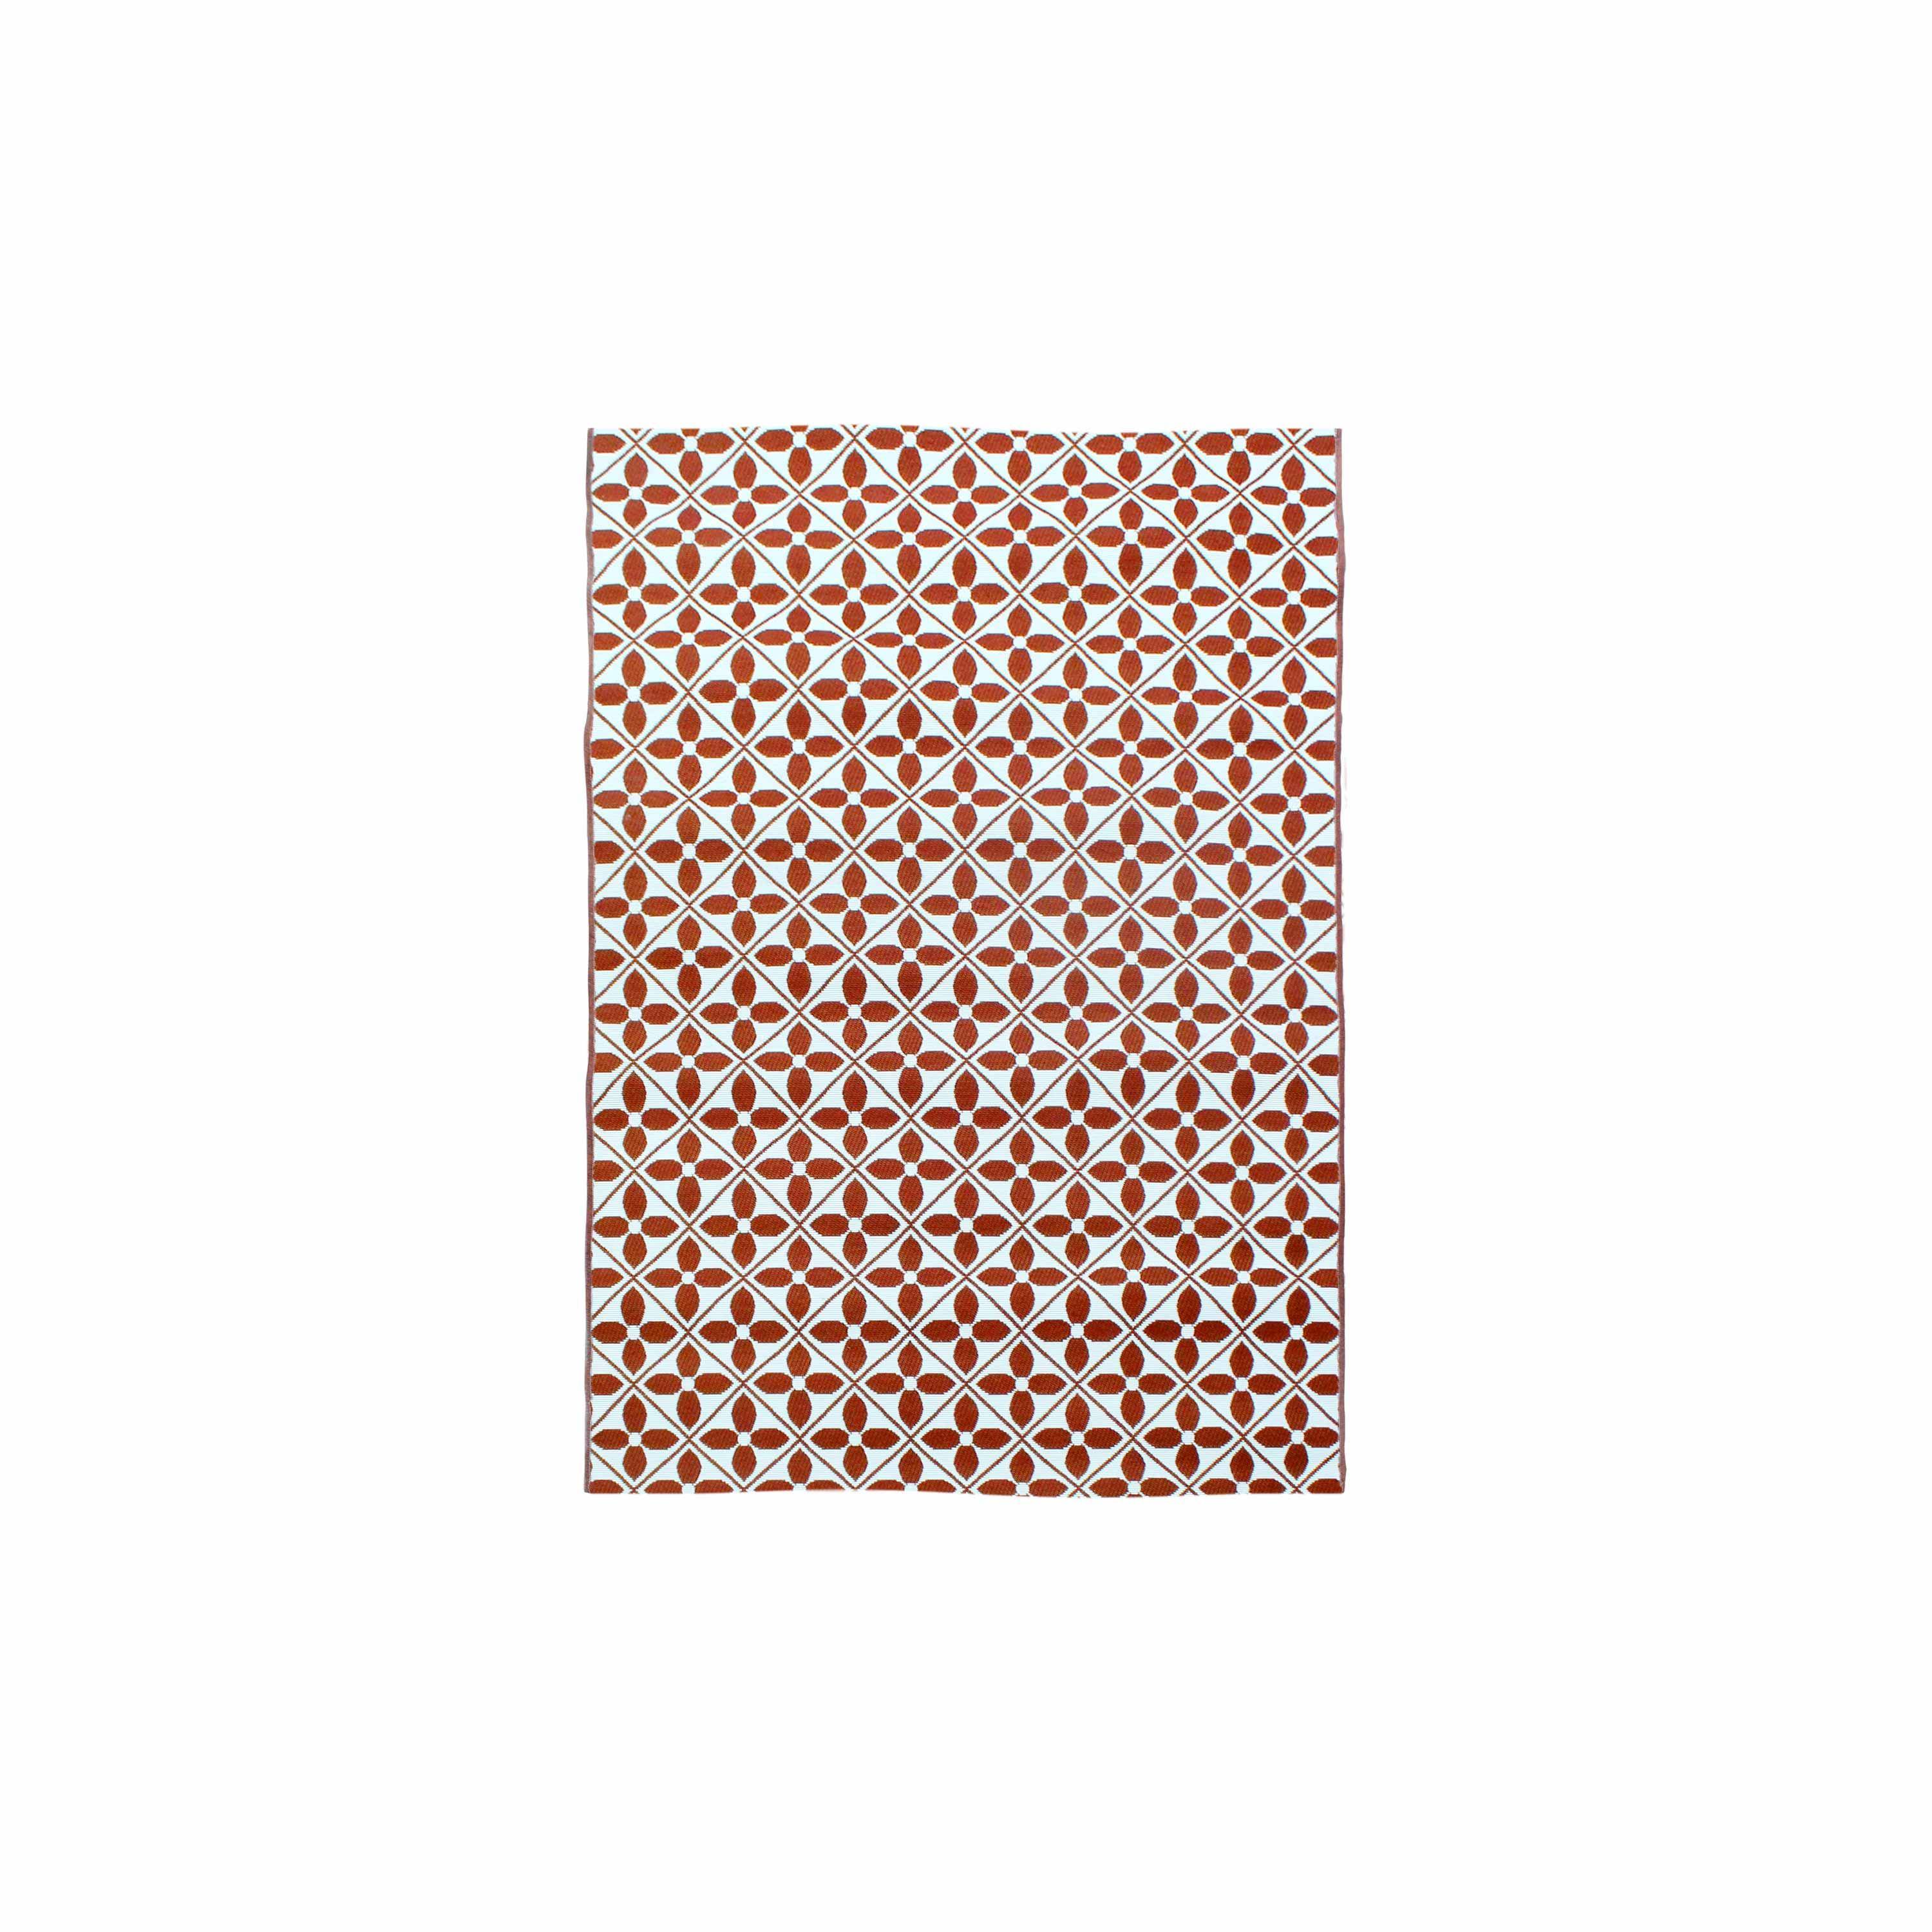 Outdoor rug - 160x230cm - tile print, rectangular, indoor/outdoor use - Terracotta Photo3